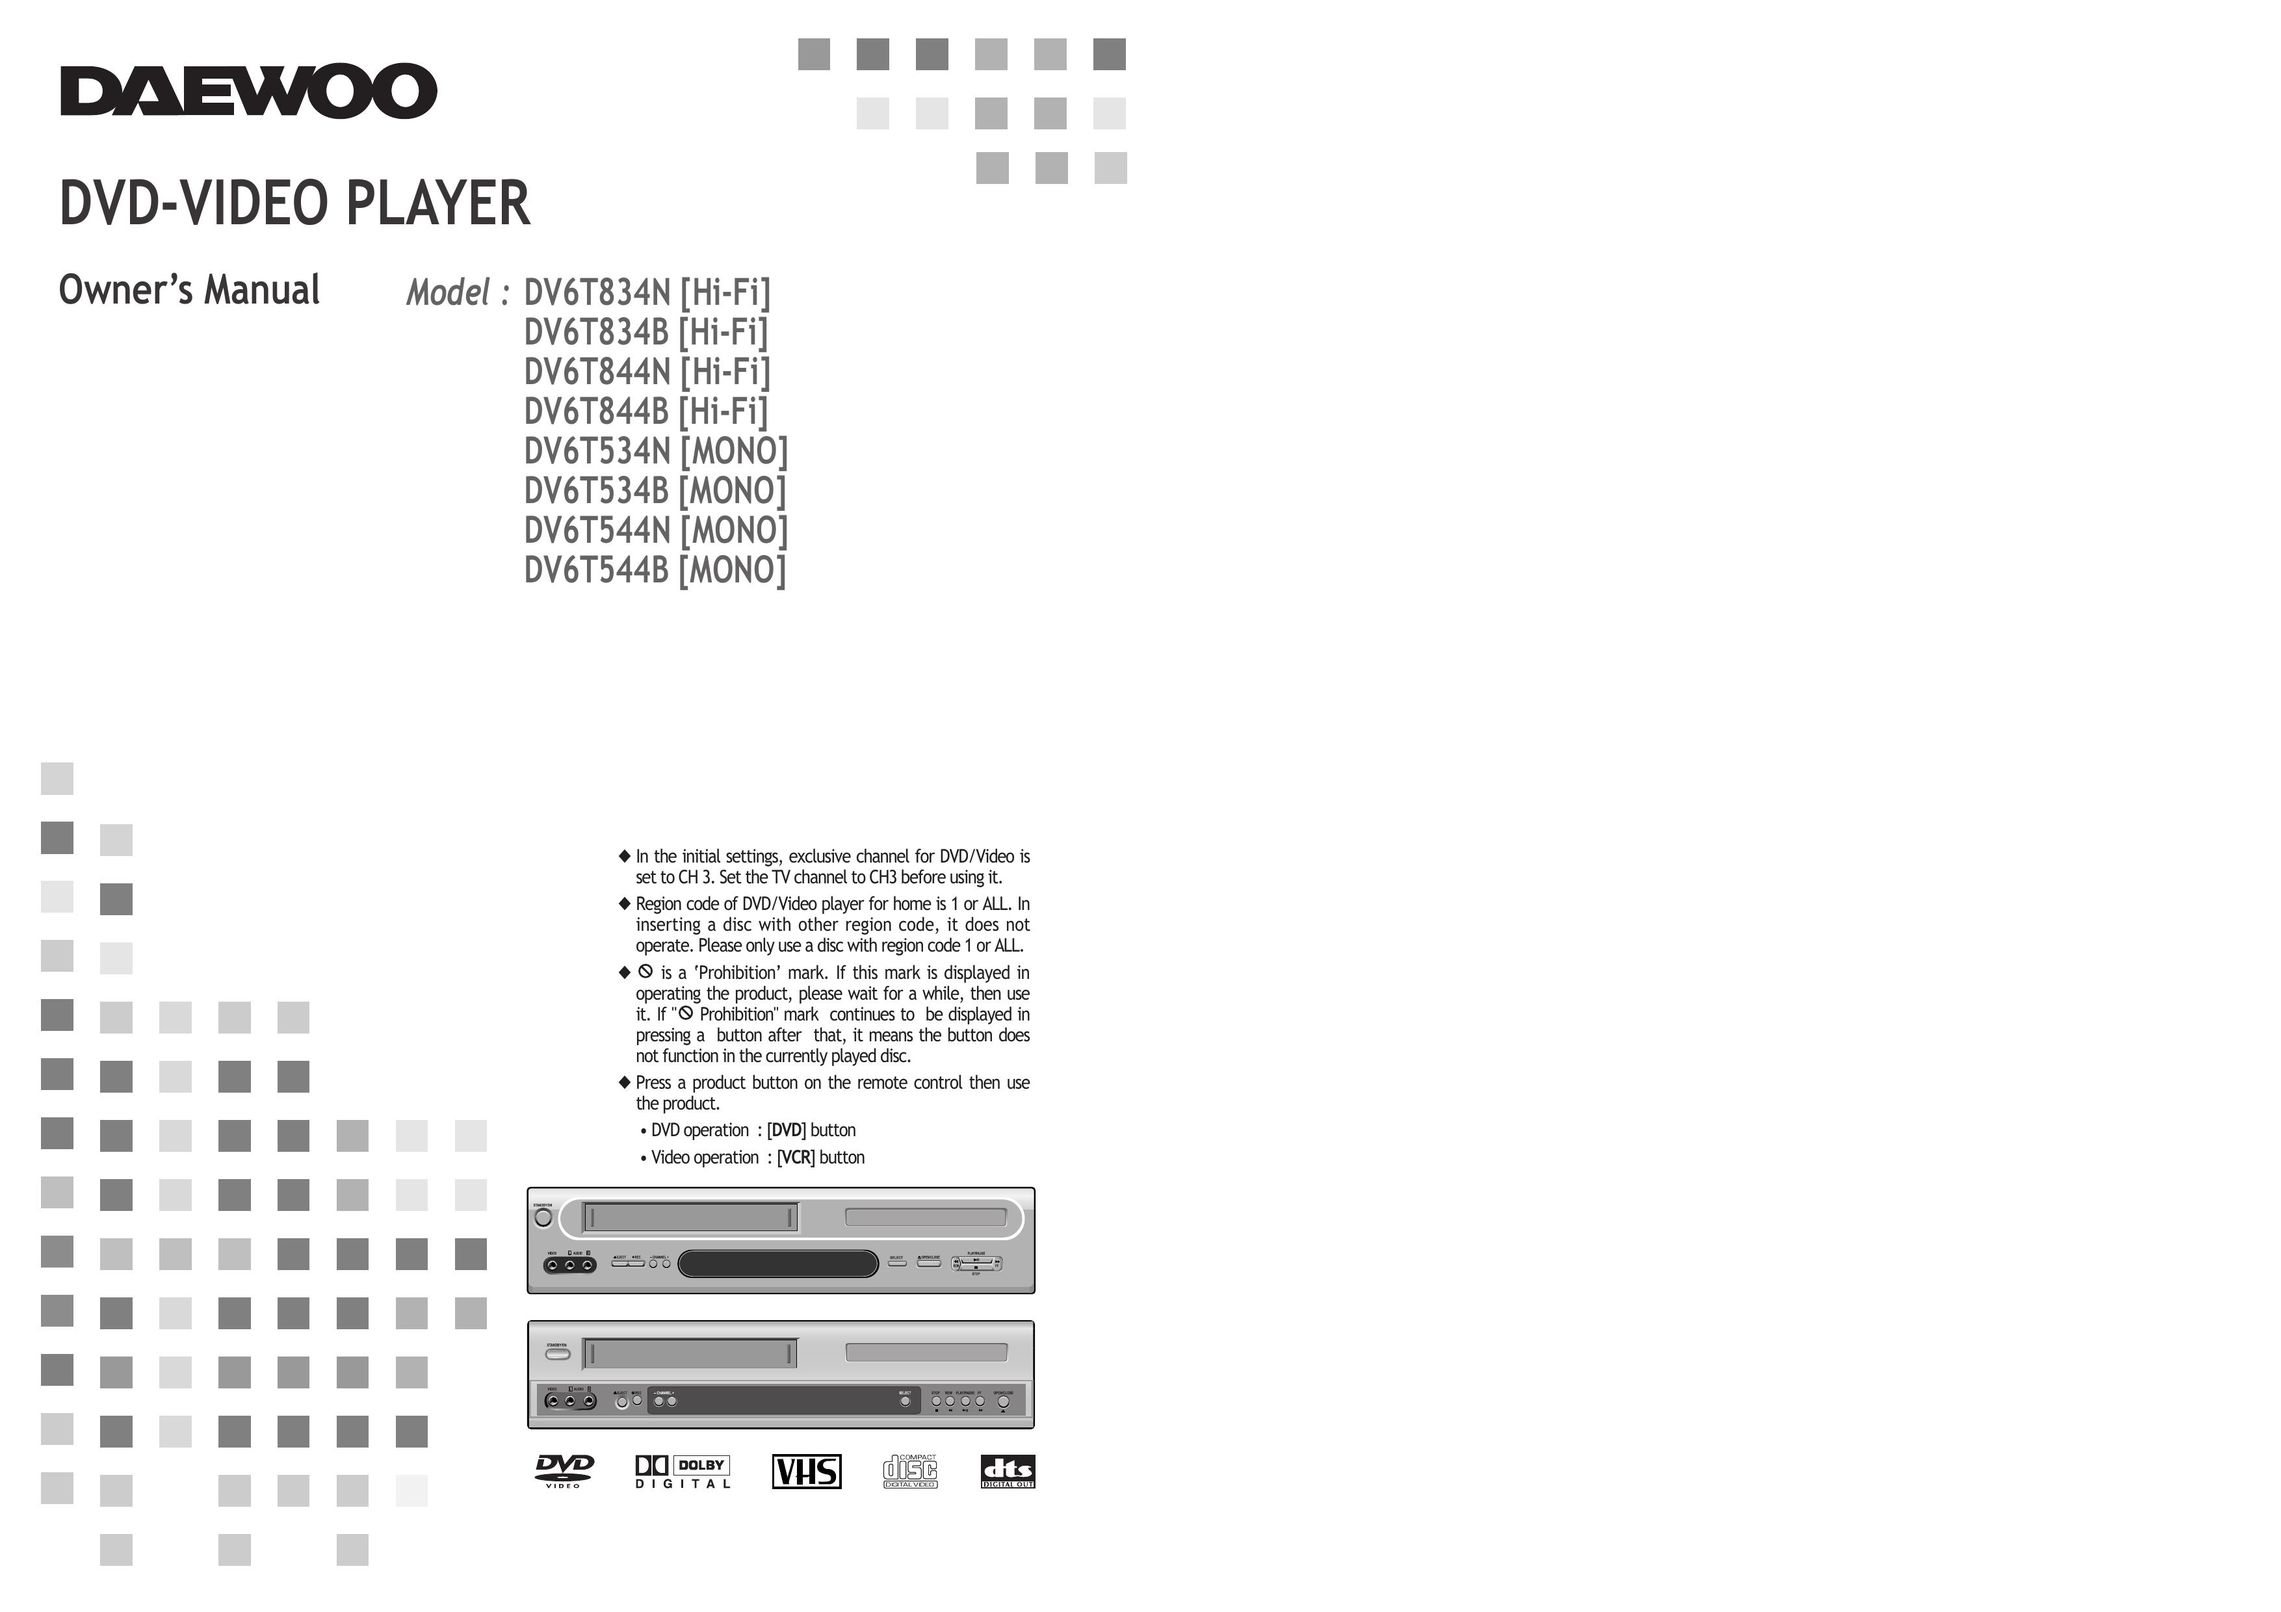 Daewoo DV6T534B DVD Player User Manual